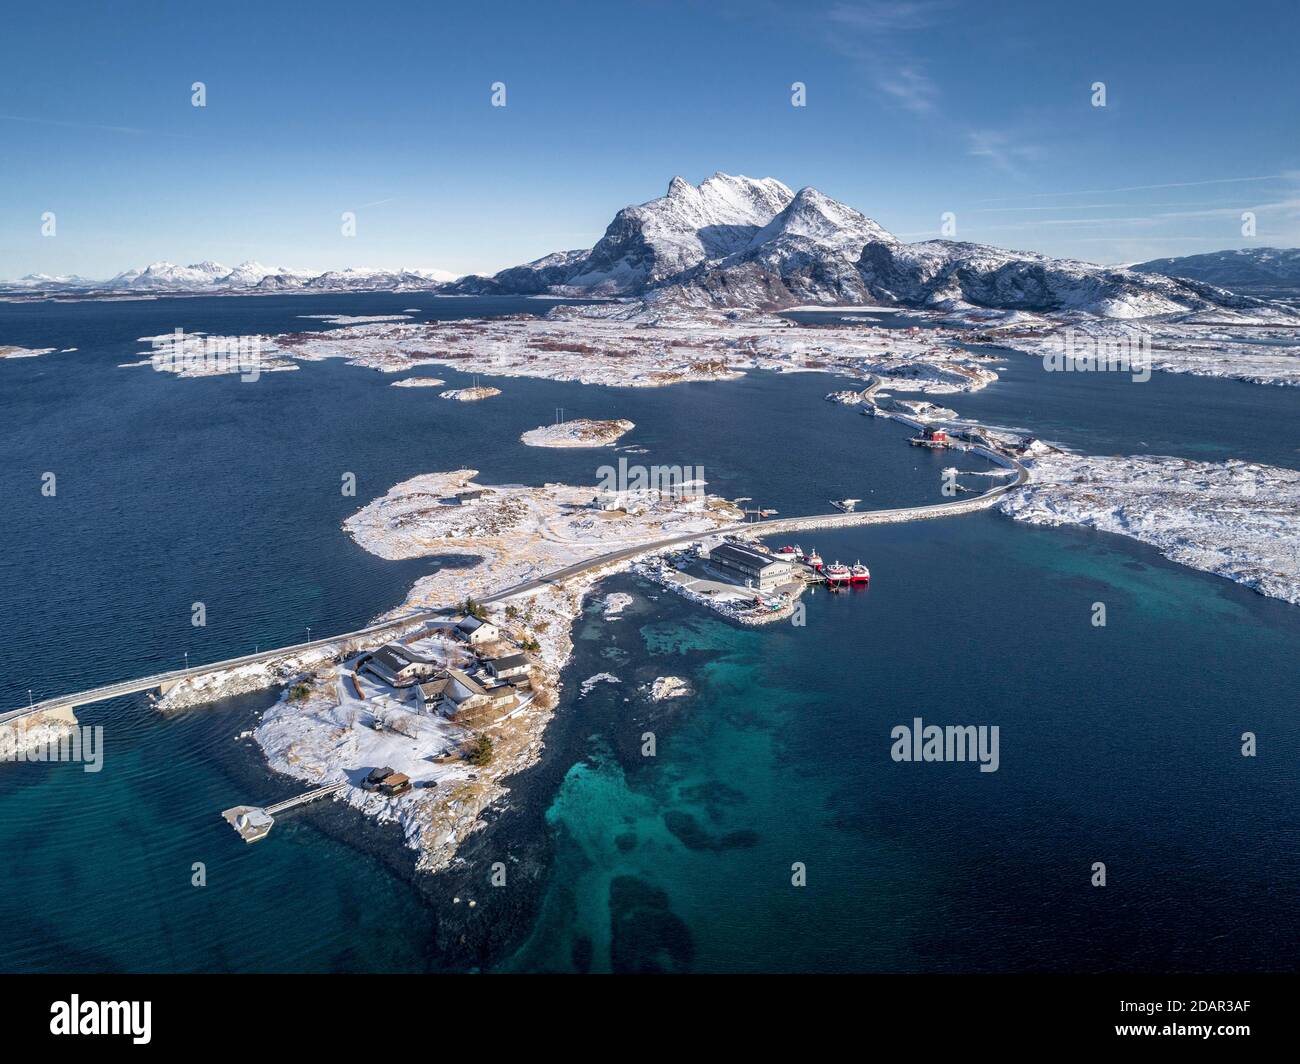 Vue aérienne, route de campagne à travers la mer relie les îles peuplées, petites, hivernales avec le continent, derrière les montagnes, Heroy, Nordland, Norvège Banque D'Images